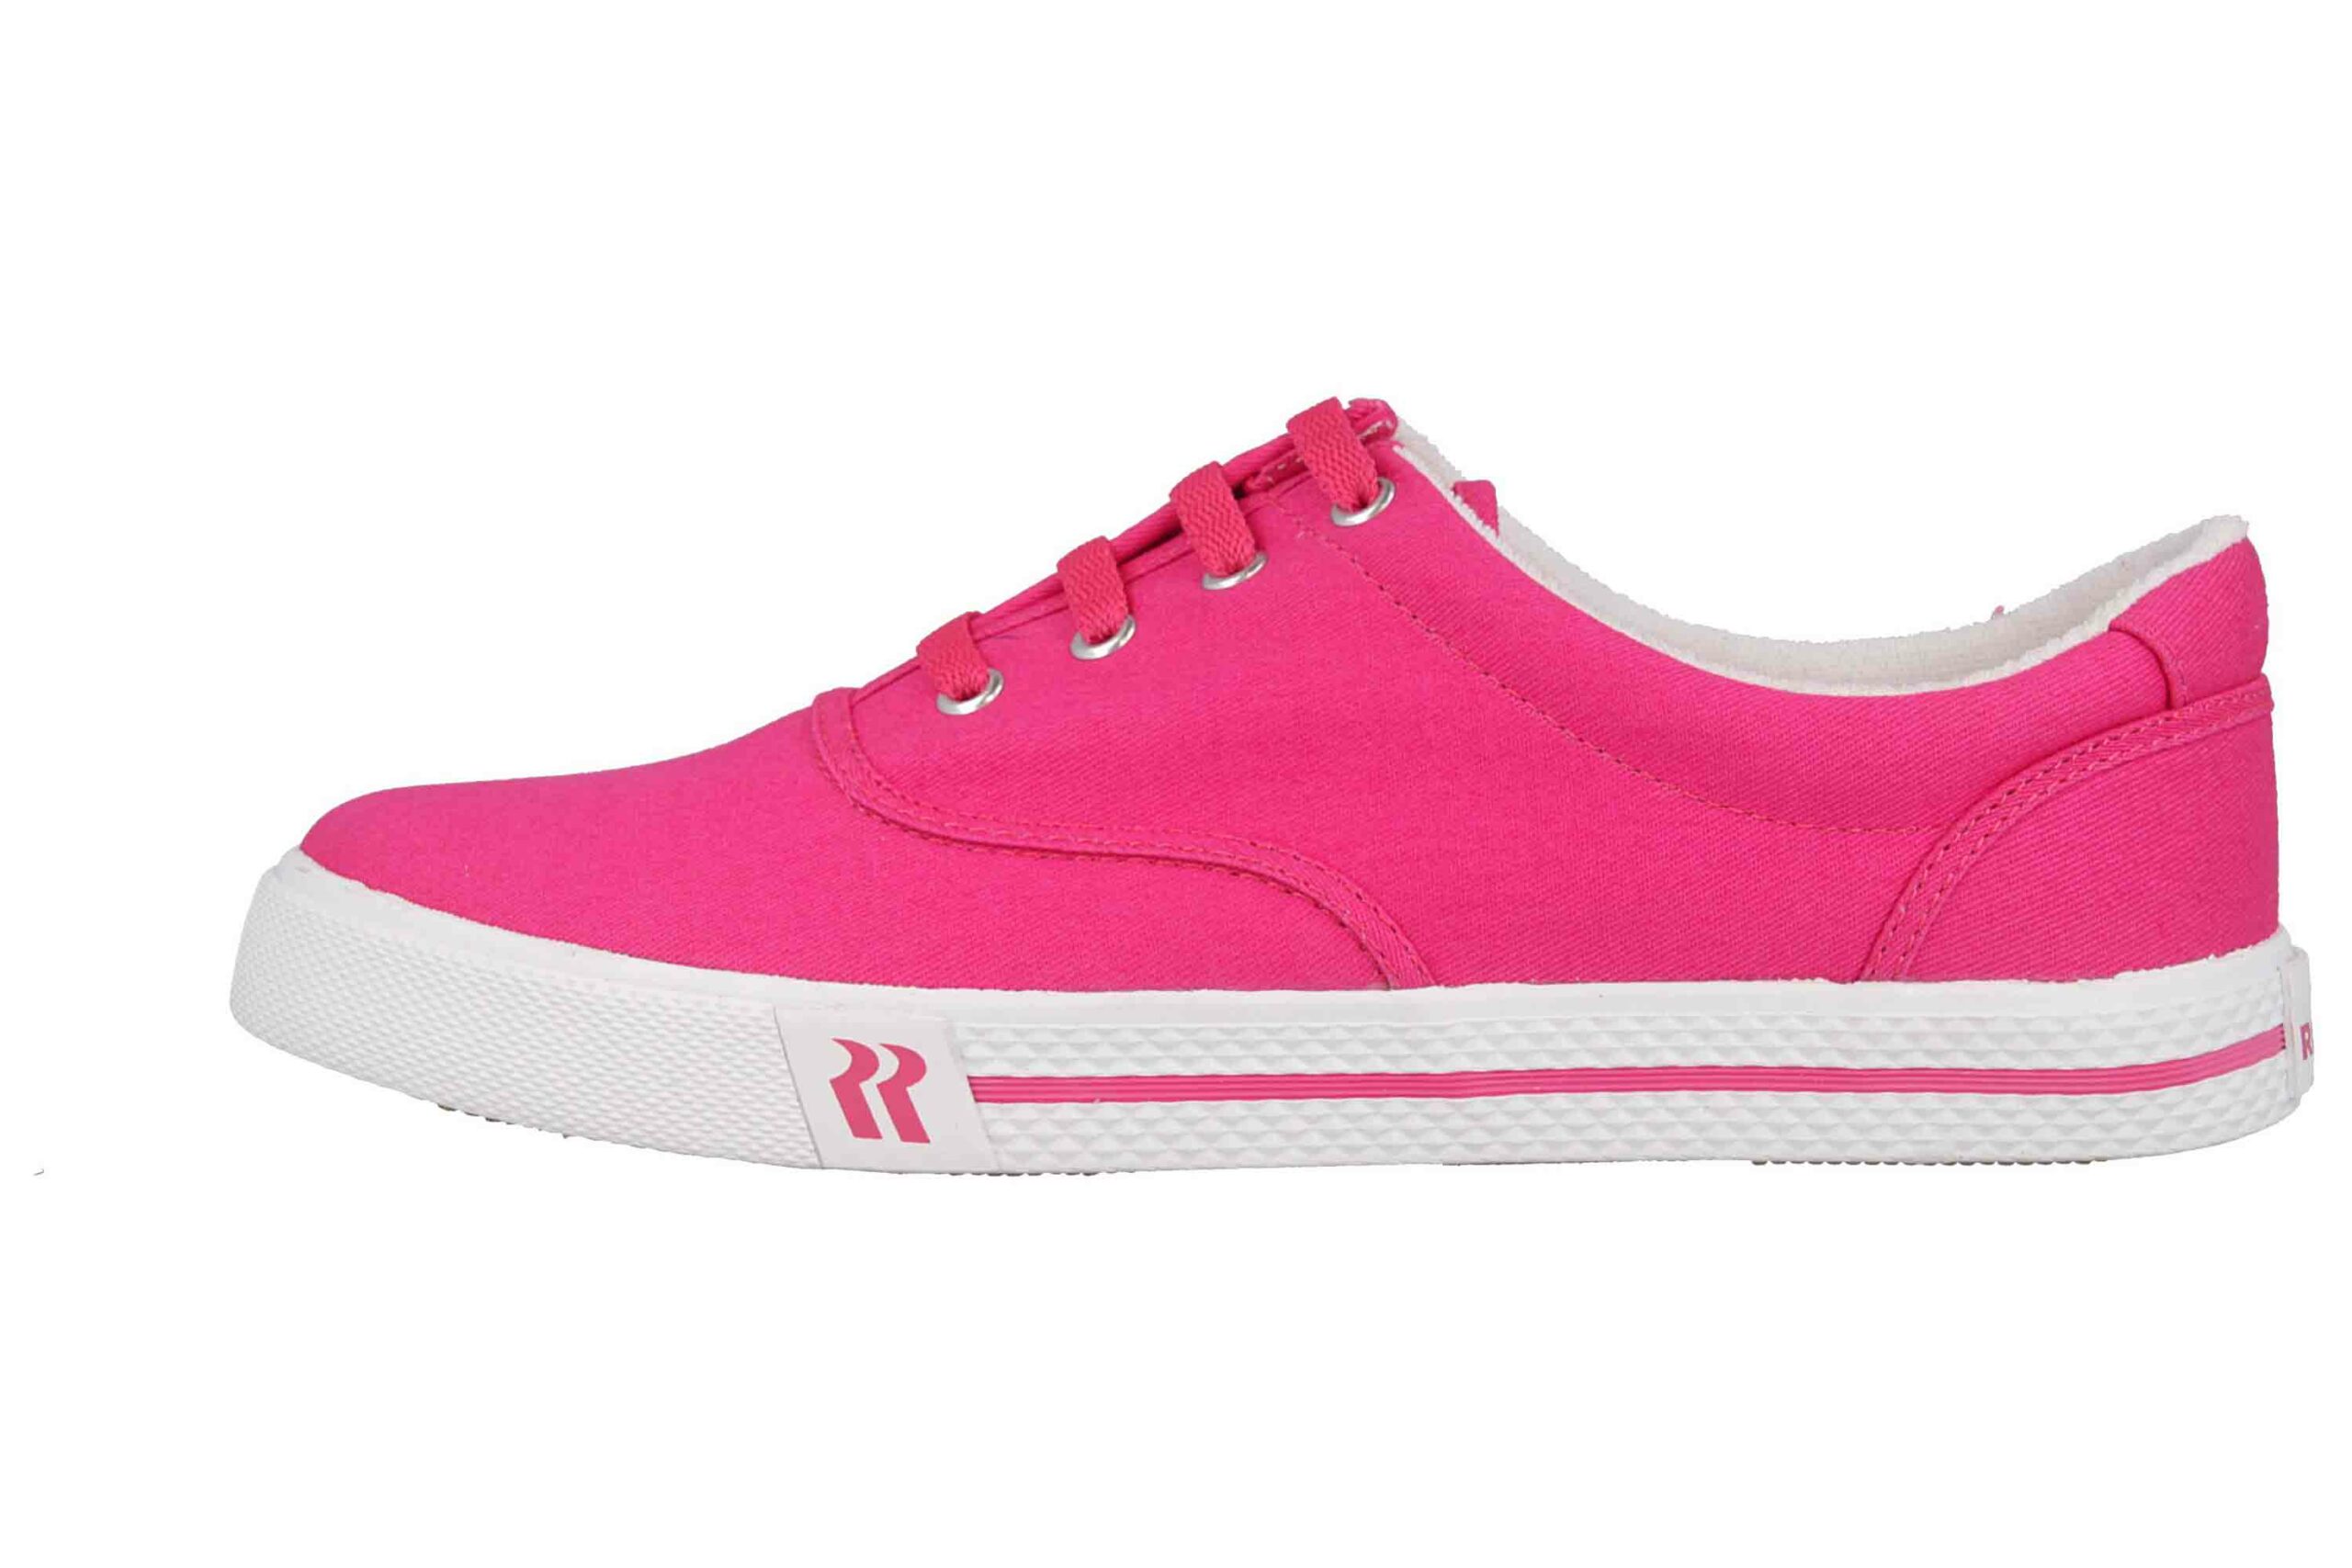 Romika Soling 35 Sneaker in Übergrößen Pink 20035 260 430 große Damenschuhe